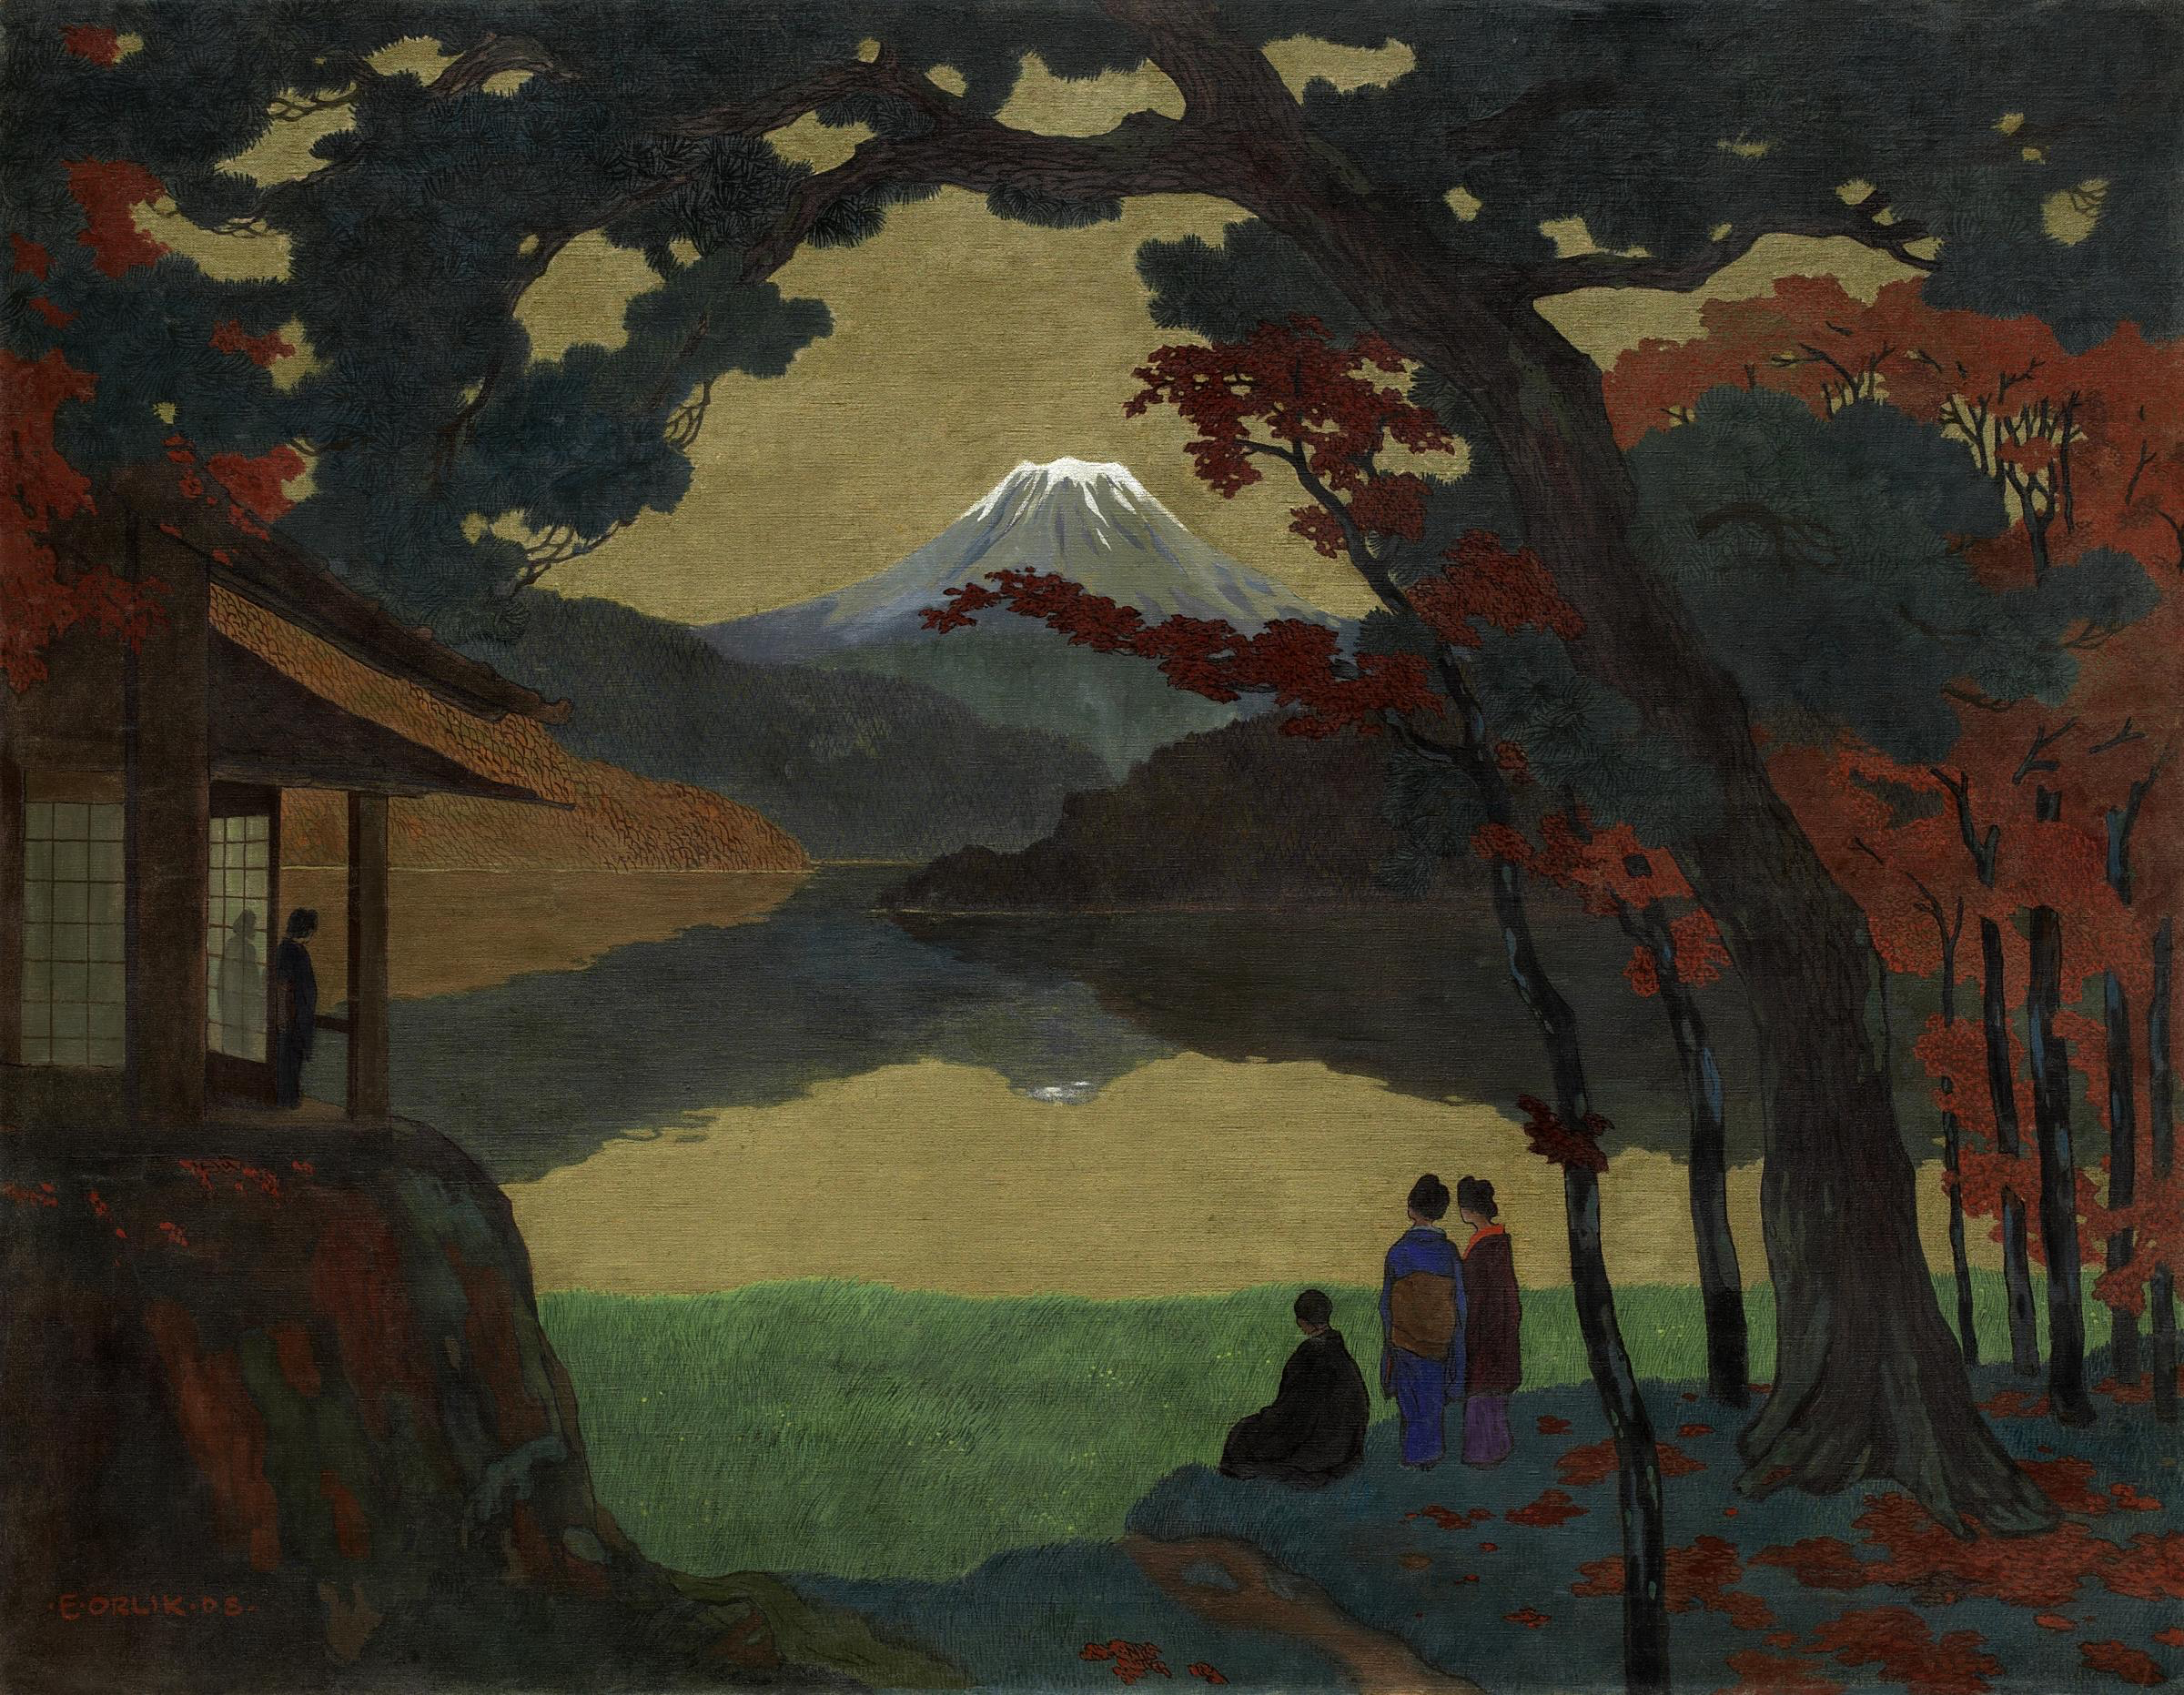 Landschaft mit Mount Fuji in der Ferne by Emil Orlik - 1908 - 120,5 x 154,5 cm Private Sammlung